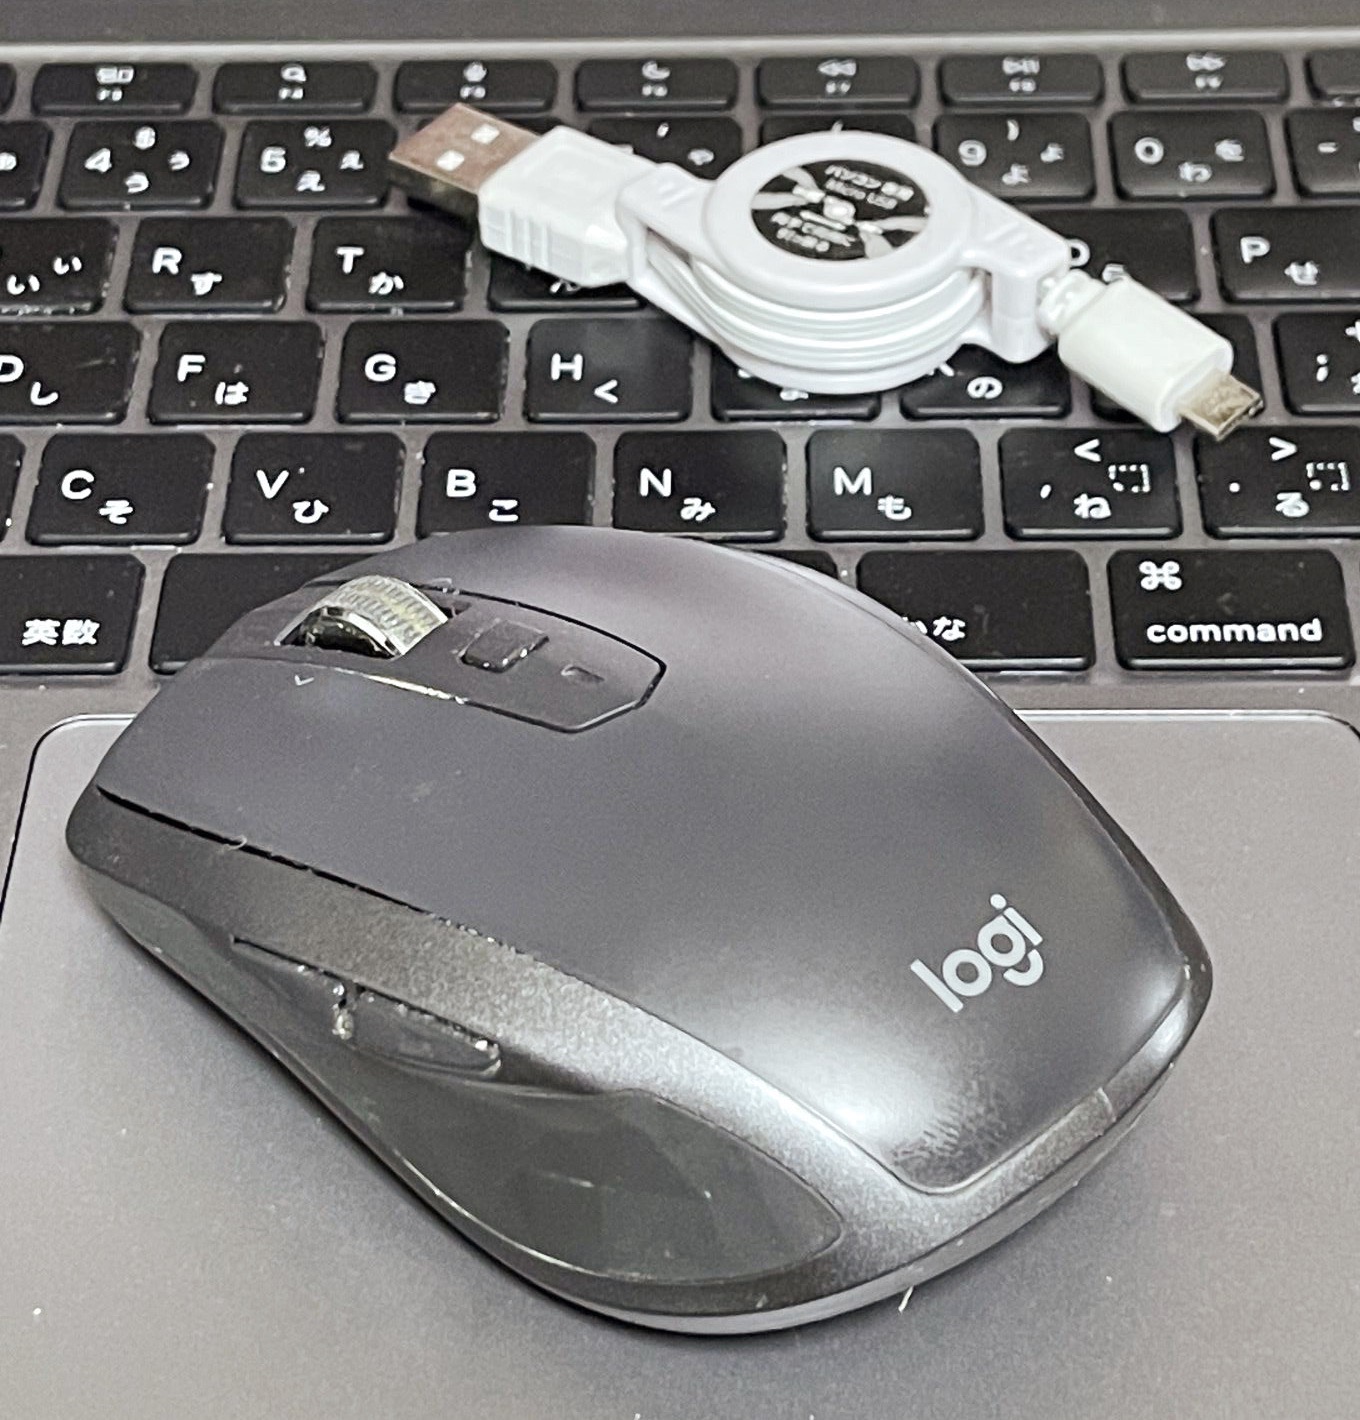 ロジクールのマウス、MX Anywhere2です。